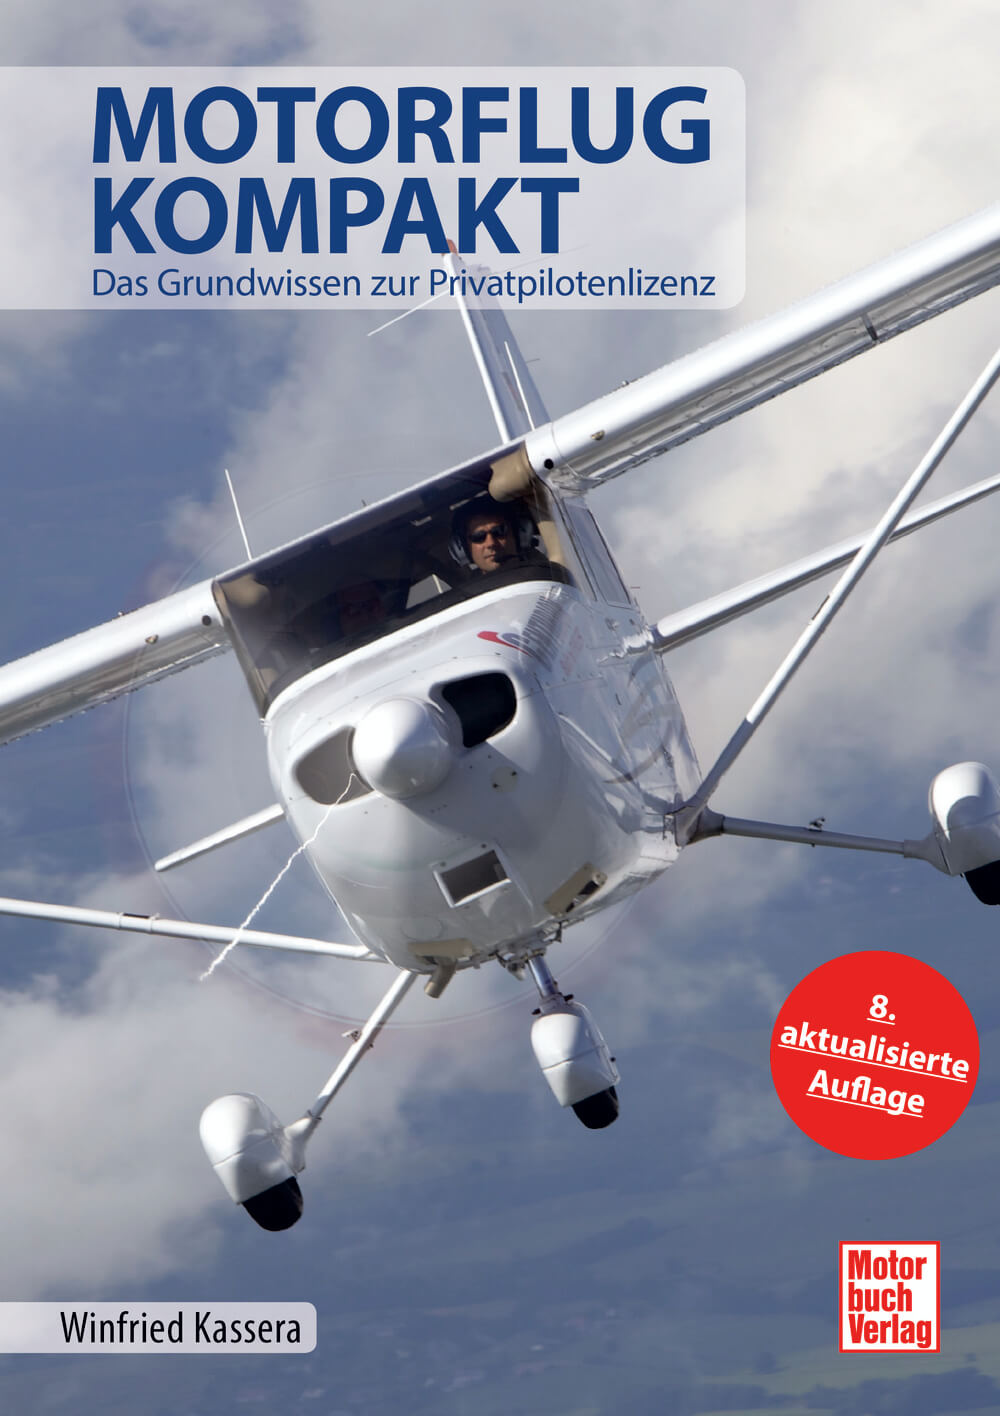 Motorbuch Verlag Motorflug kompakt